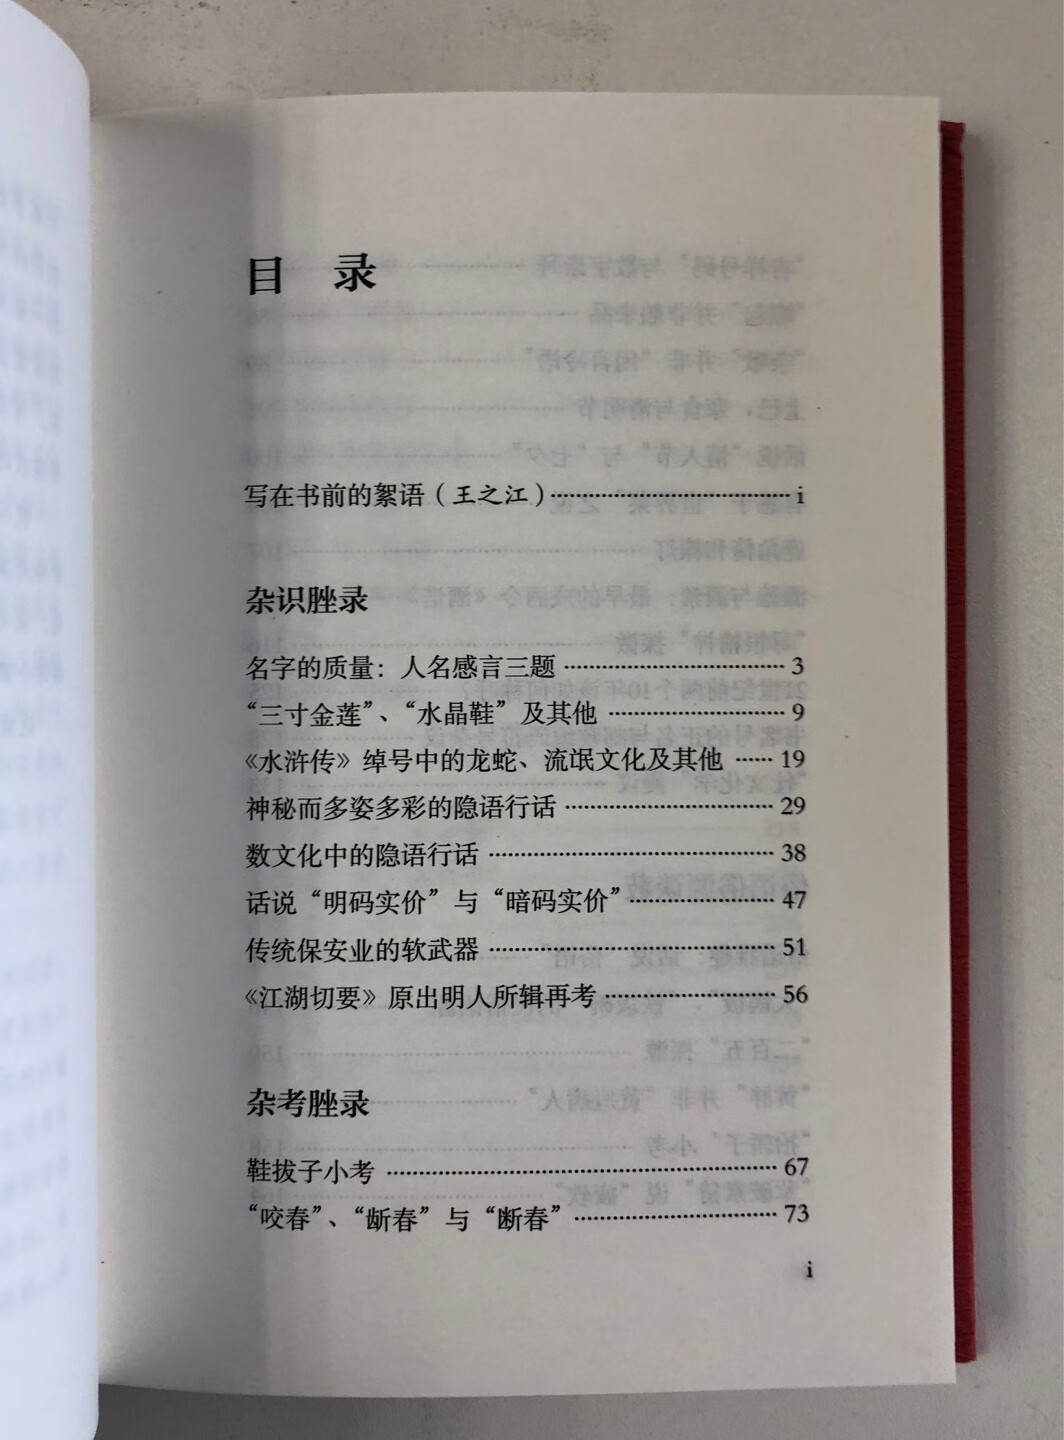 好久没见海豚出版社的新文史类书了，俞晓群离开后，似乎出新书的节奏慢了不少啊。